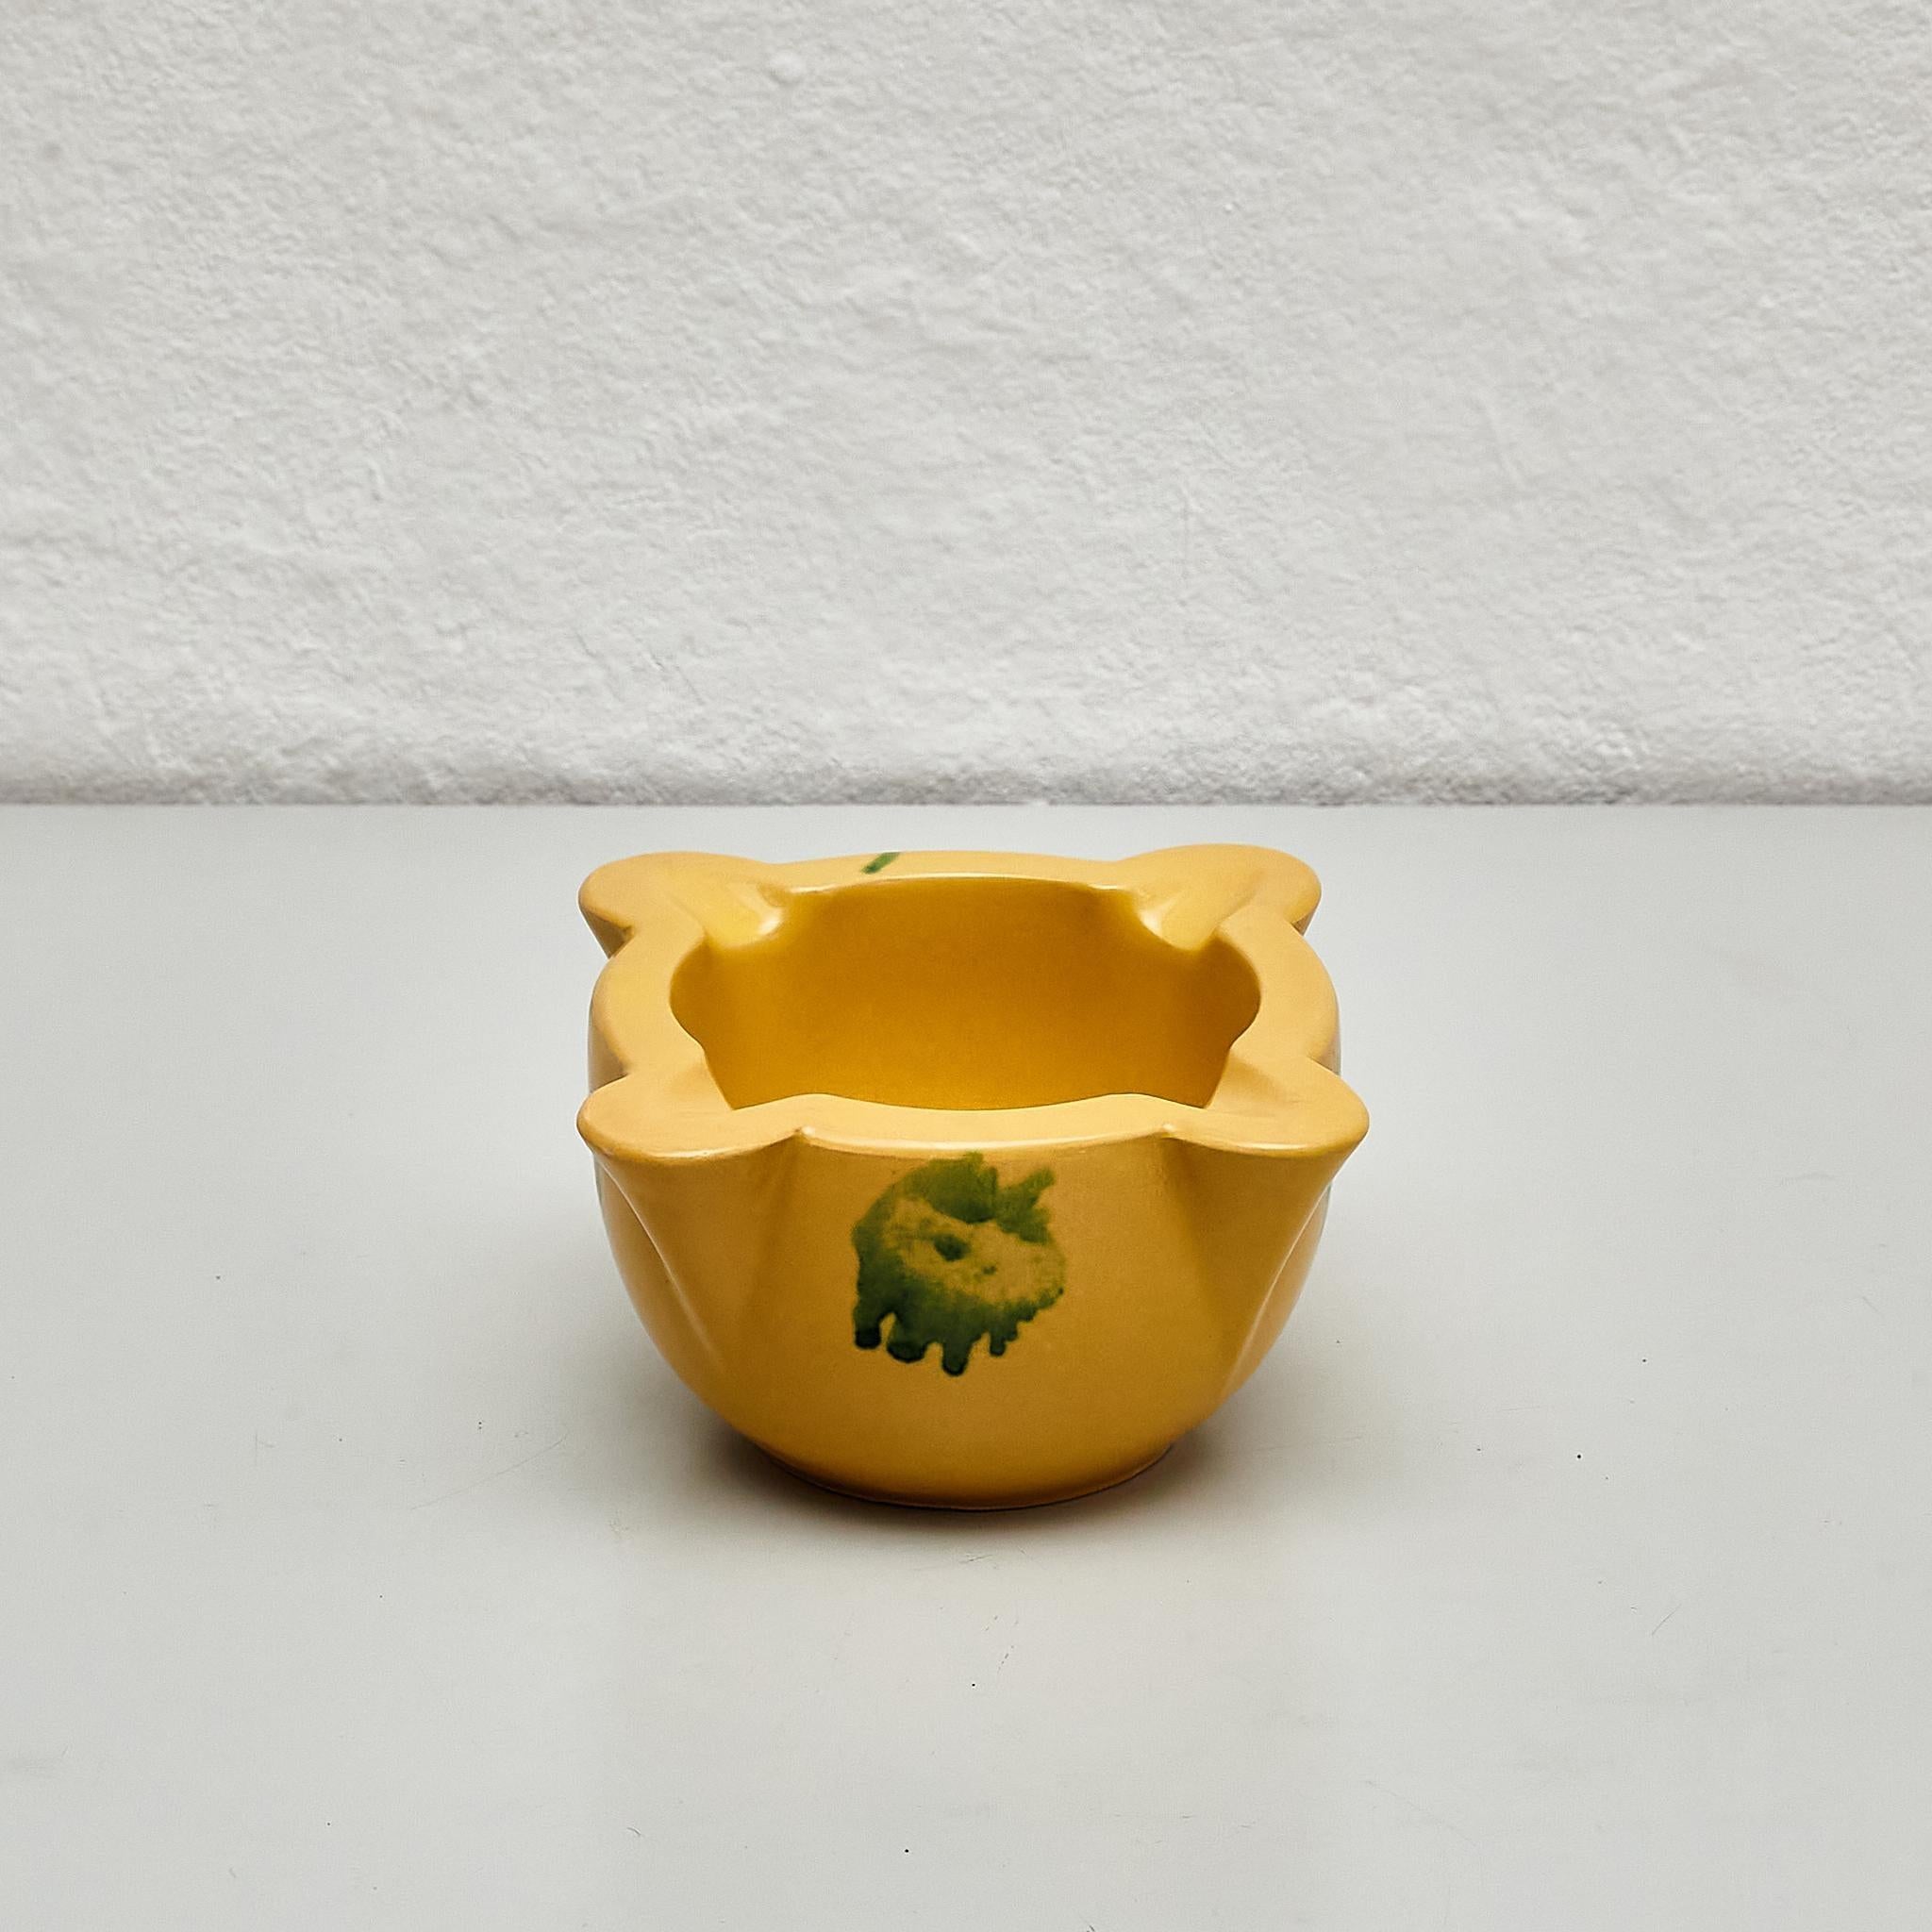 Antiker gelber Keramikmörser im Vintage-Stil. 

Hergestellt von einem unbekannten Hersteller in Spanien um 1970.

Originaler Zustand mit geringen alters- und gebrauchsbedingten Abnutzungserscheinungen, der eine schöne Patina